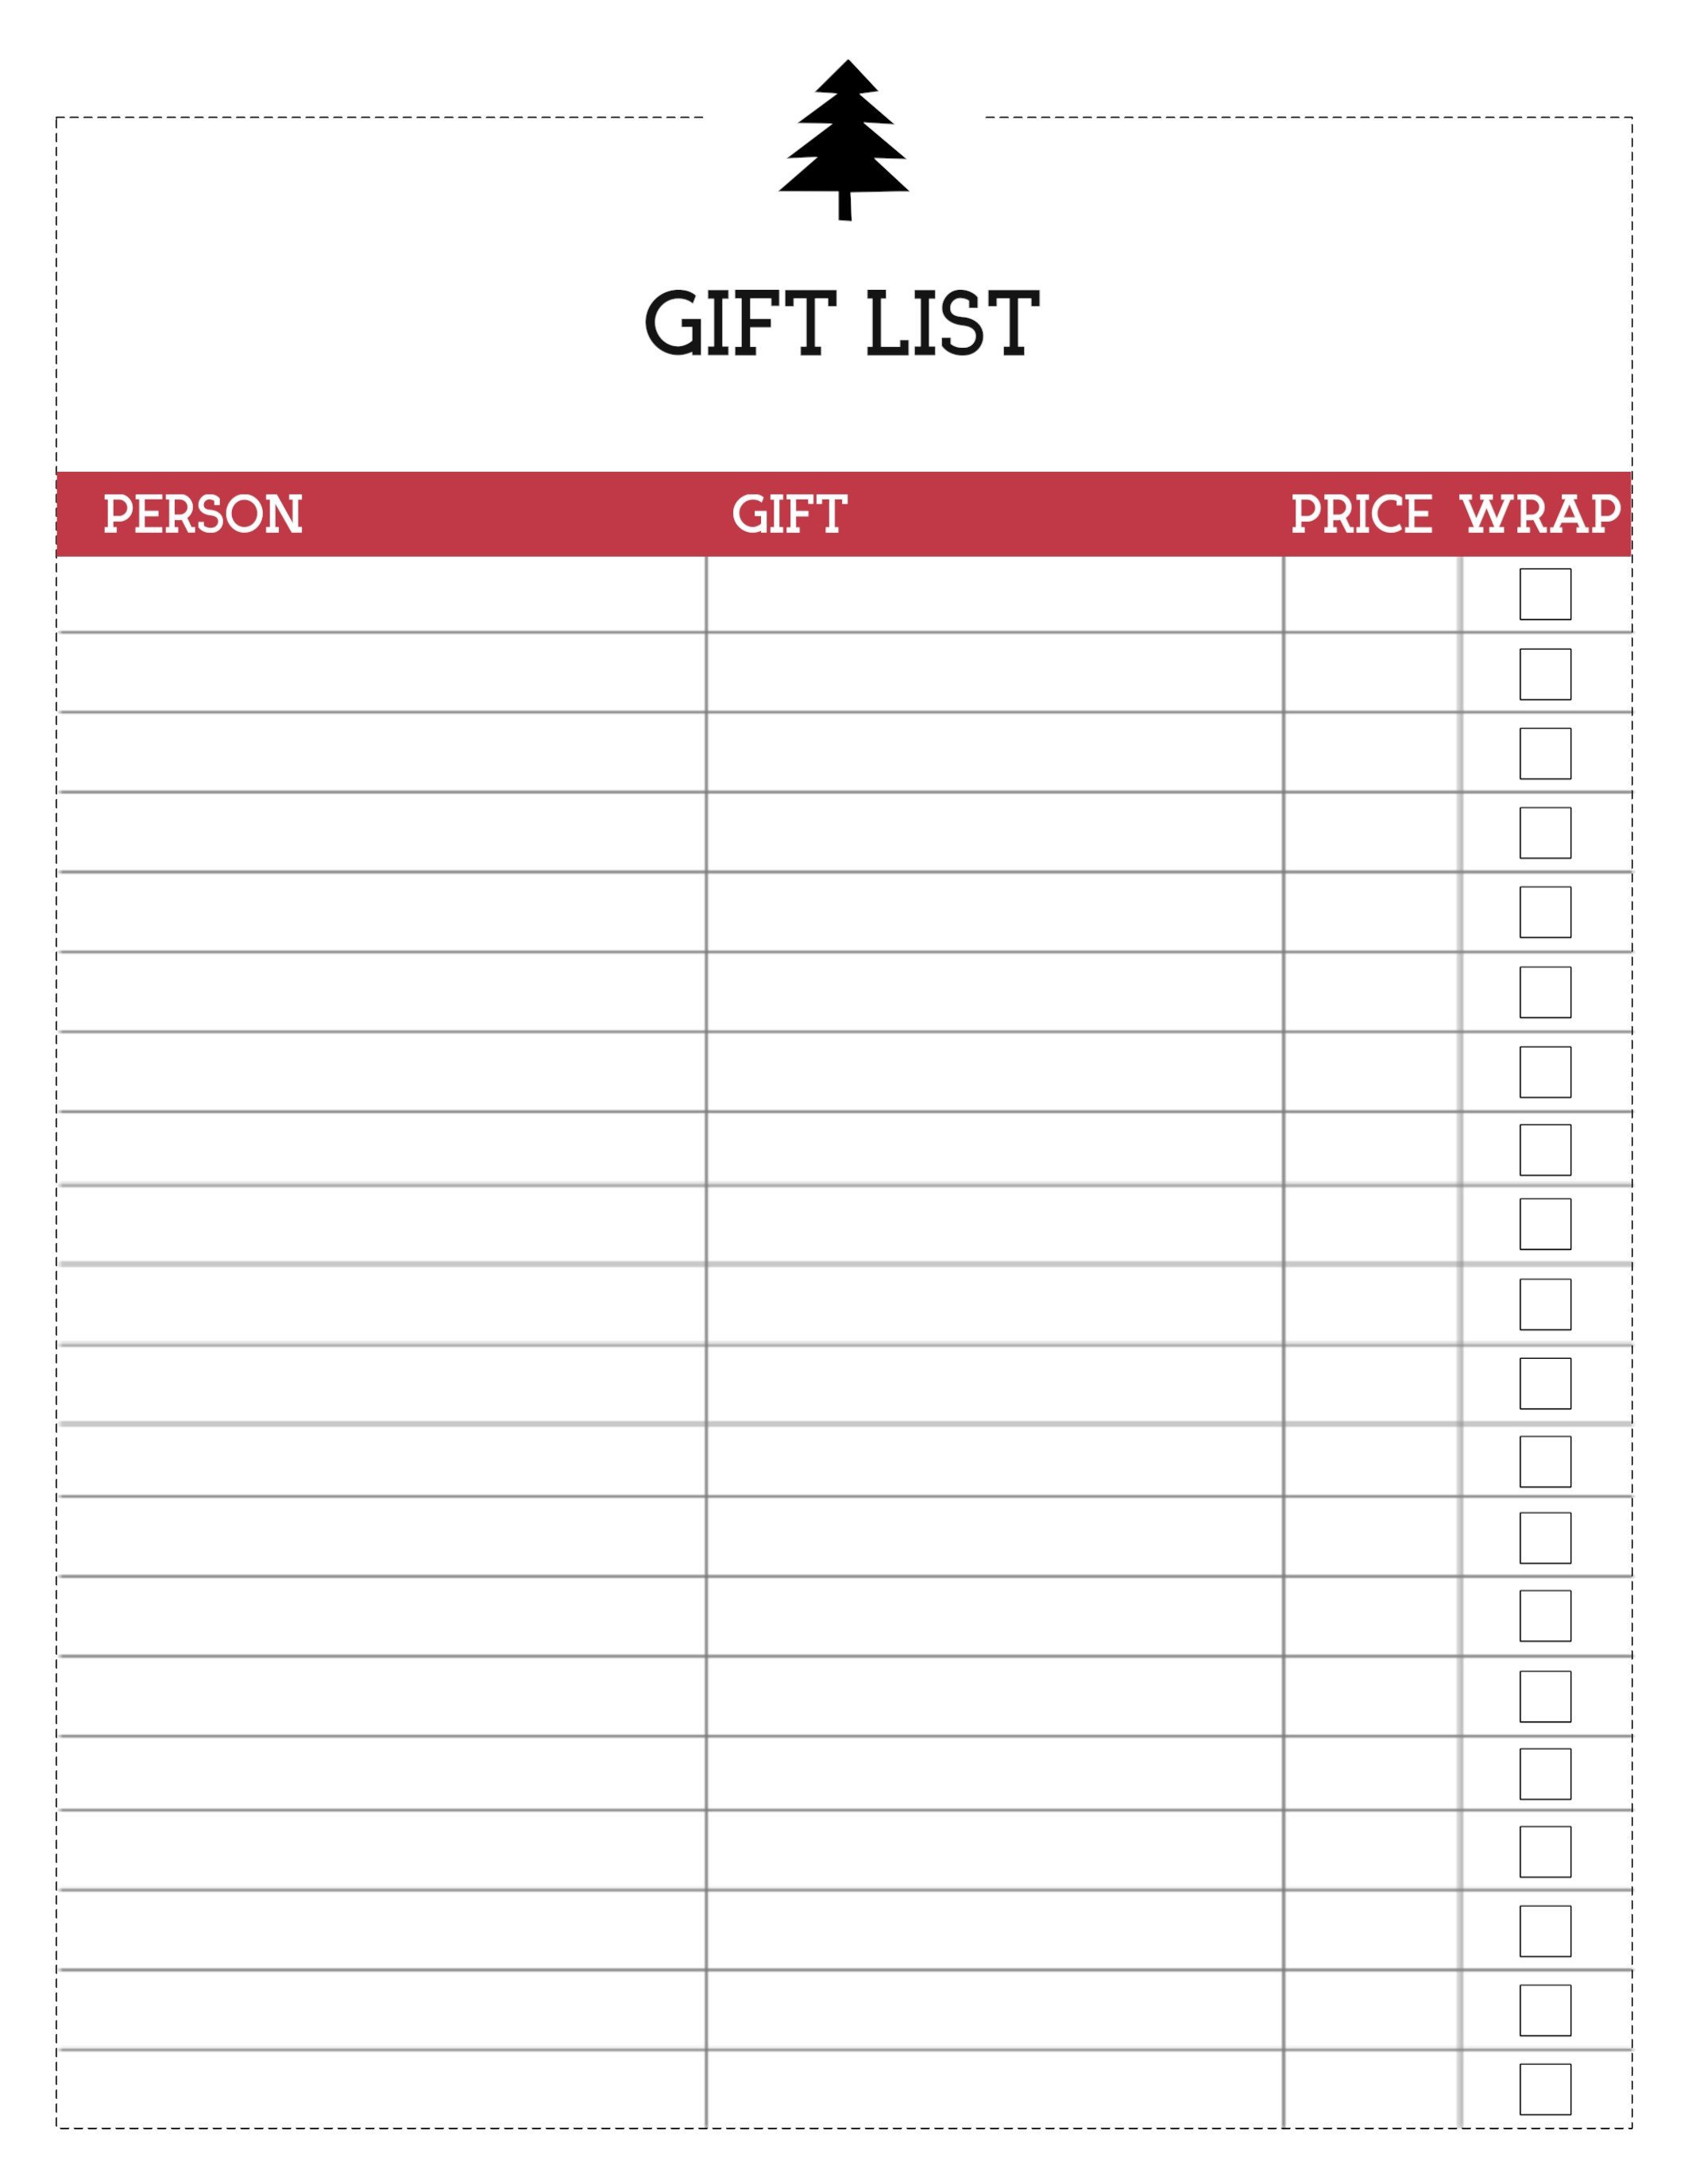 Christmas Gift List Template Free Printable Christmas List Template Gift List Paper